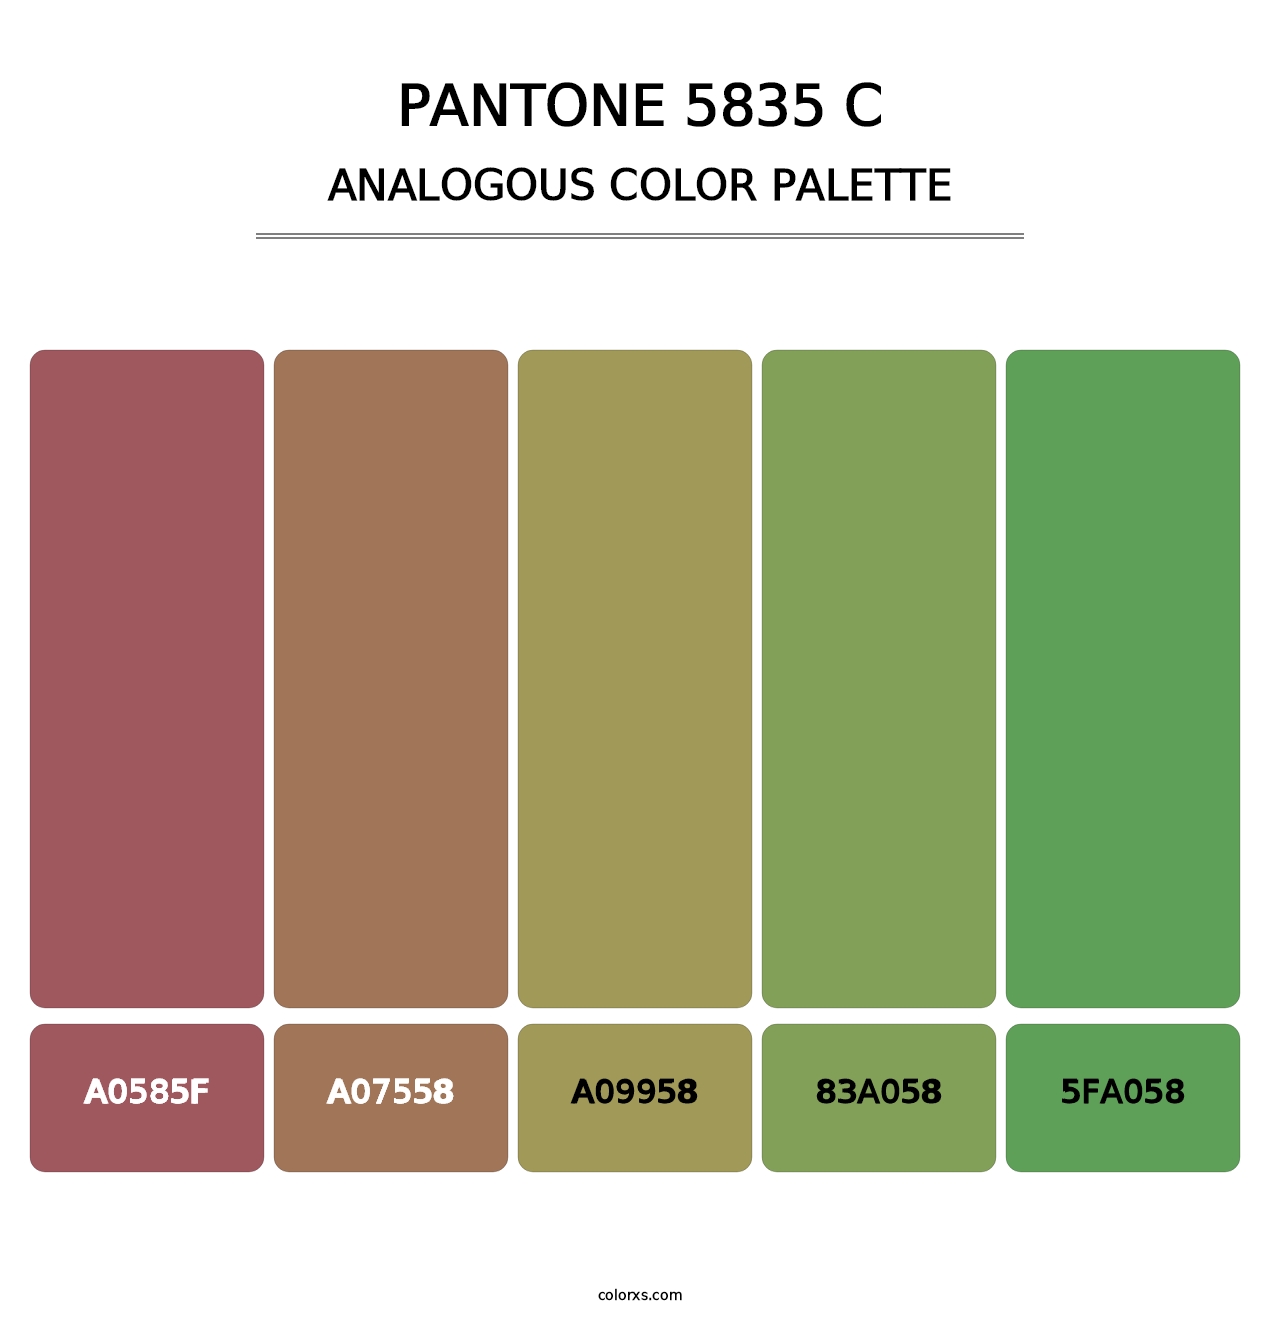 PANTONE 5835 C - Analogous Color Palette